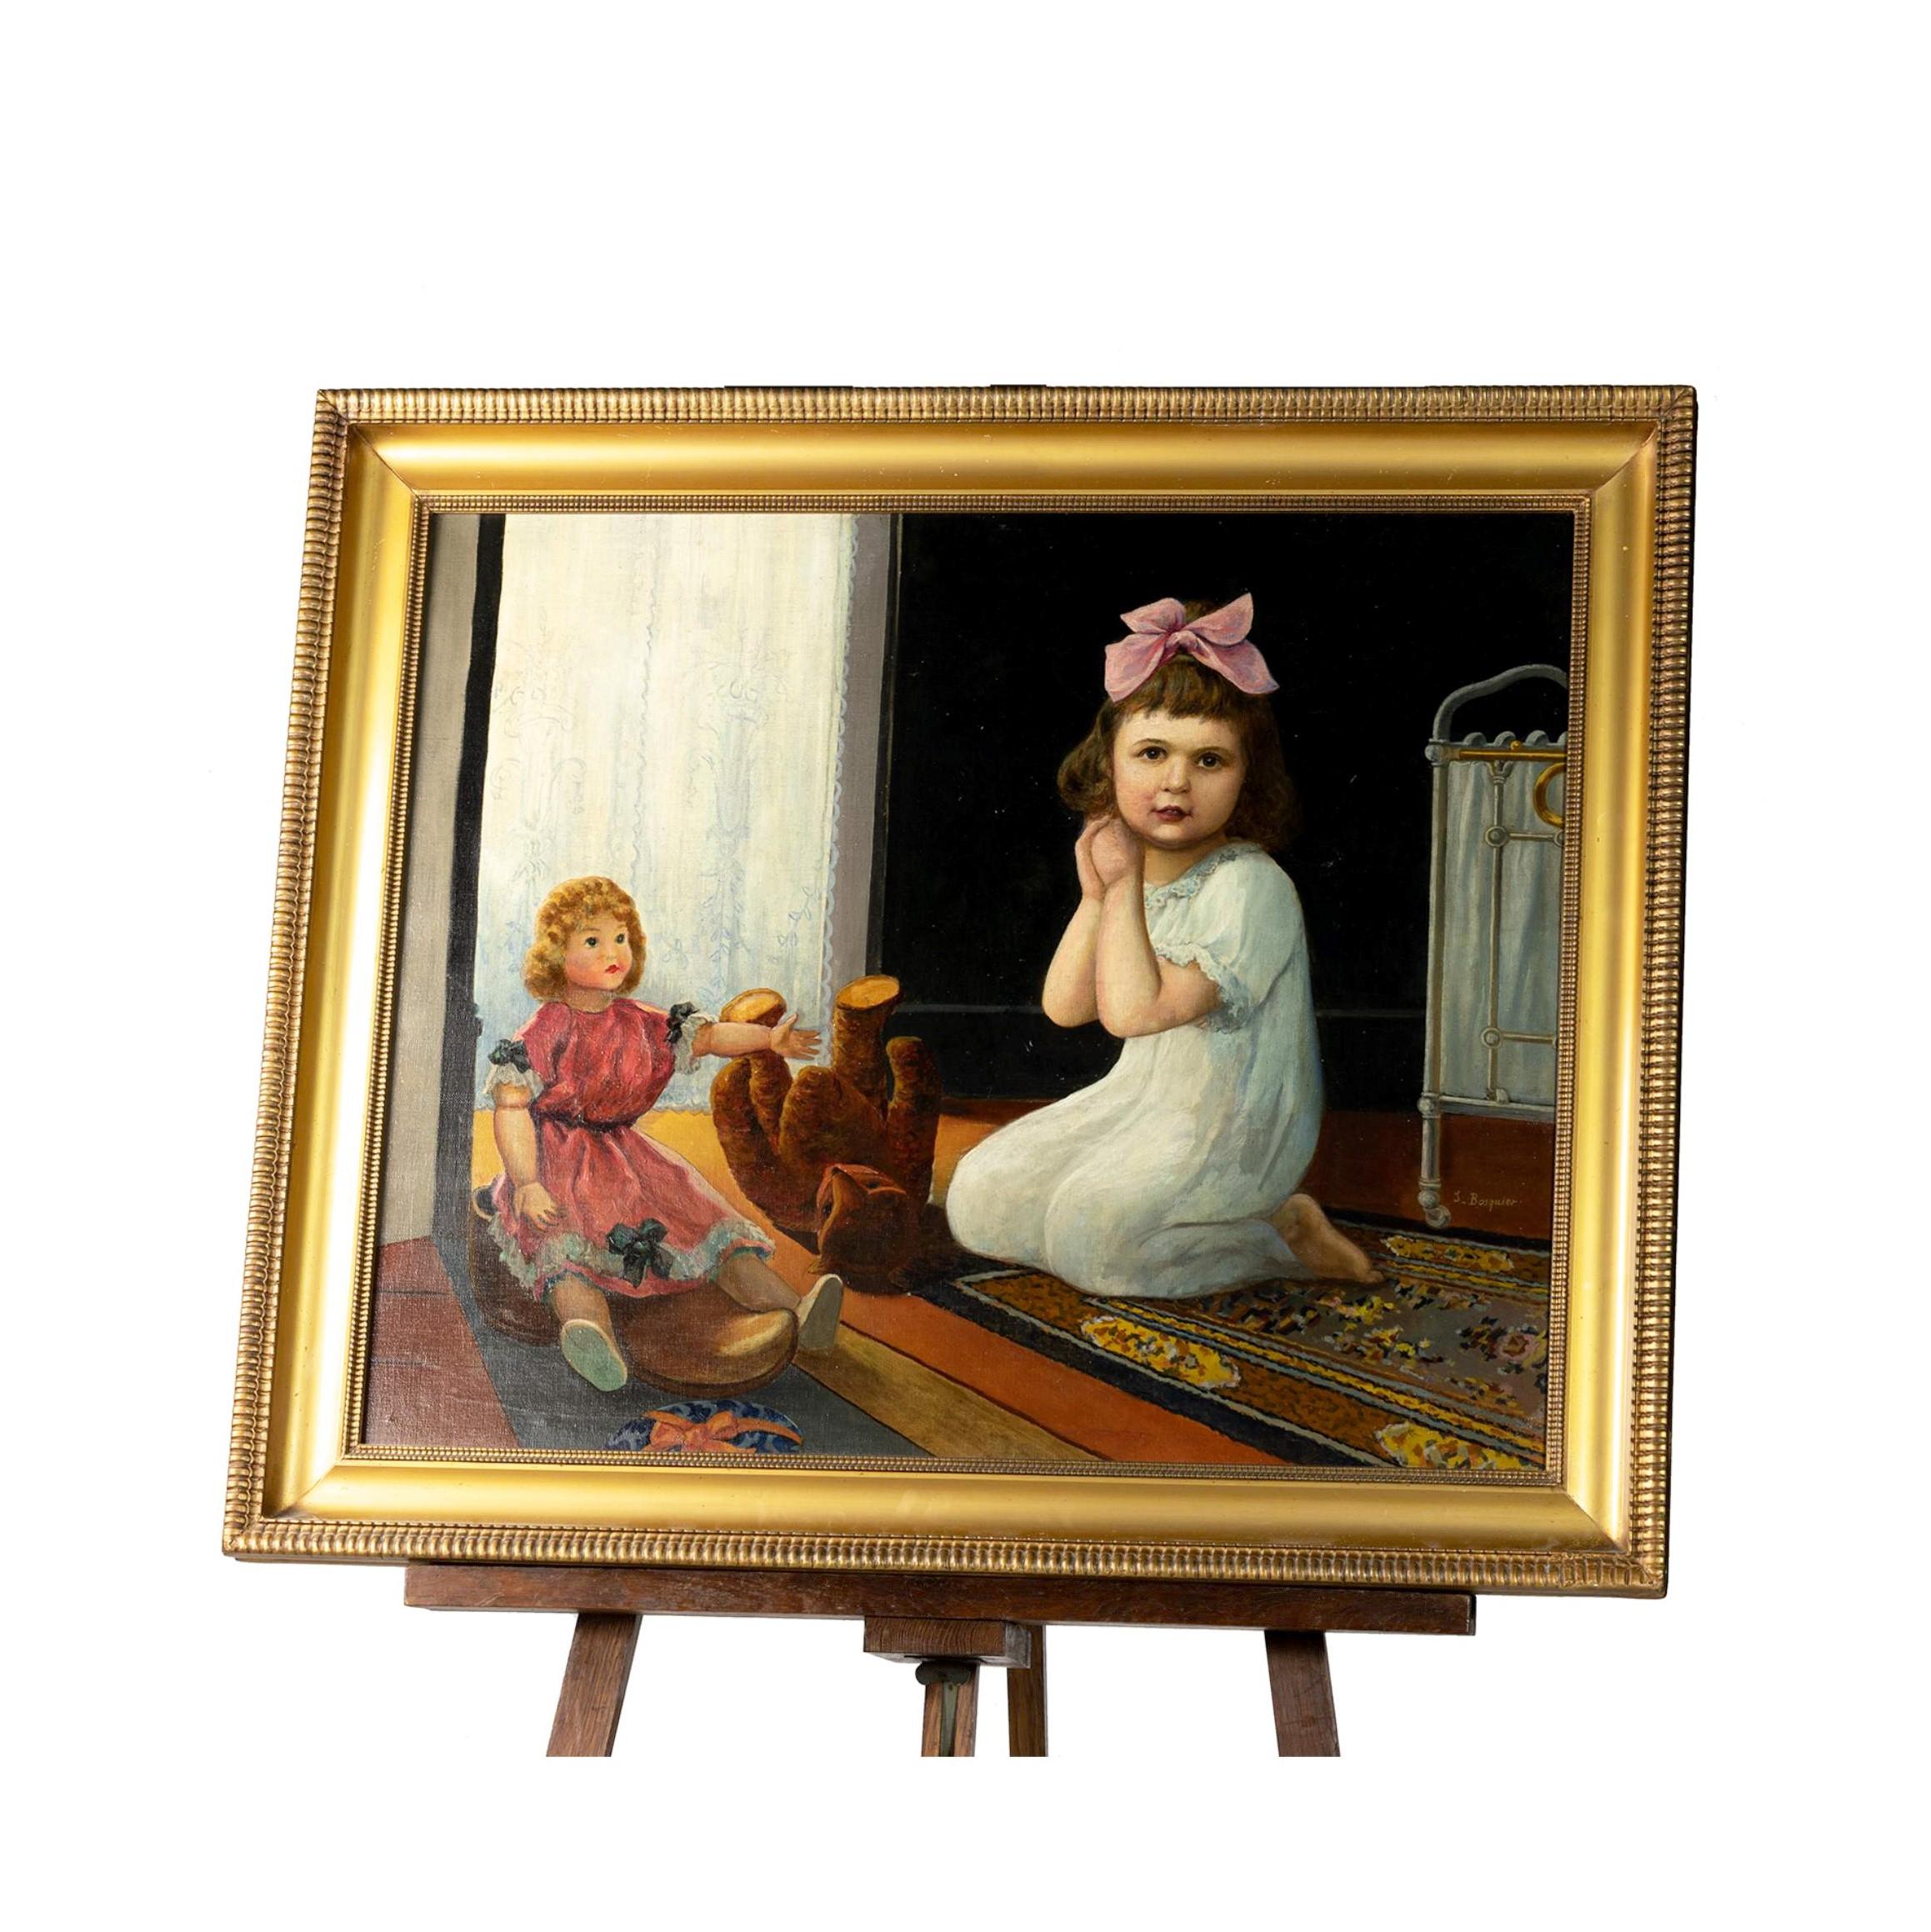 Ein Gemälde eines kleinen Kindes mit einem Stofftier und einer Puppe in seinem Kinderzimmer.
Öl auf Leinwand.
J Bosquier